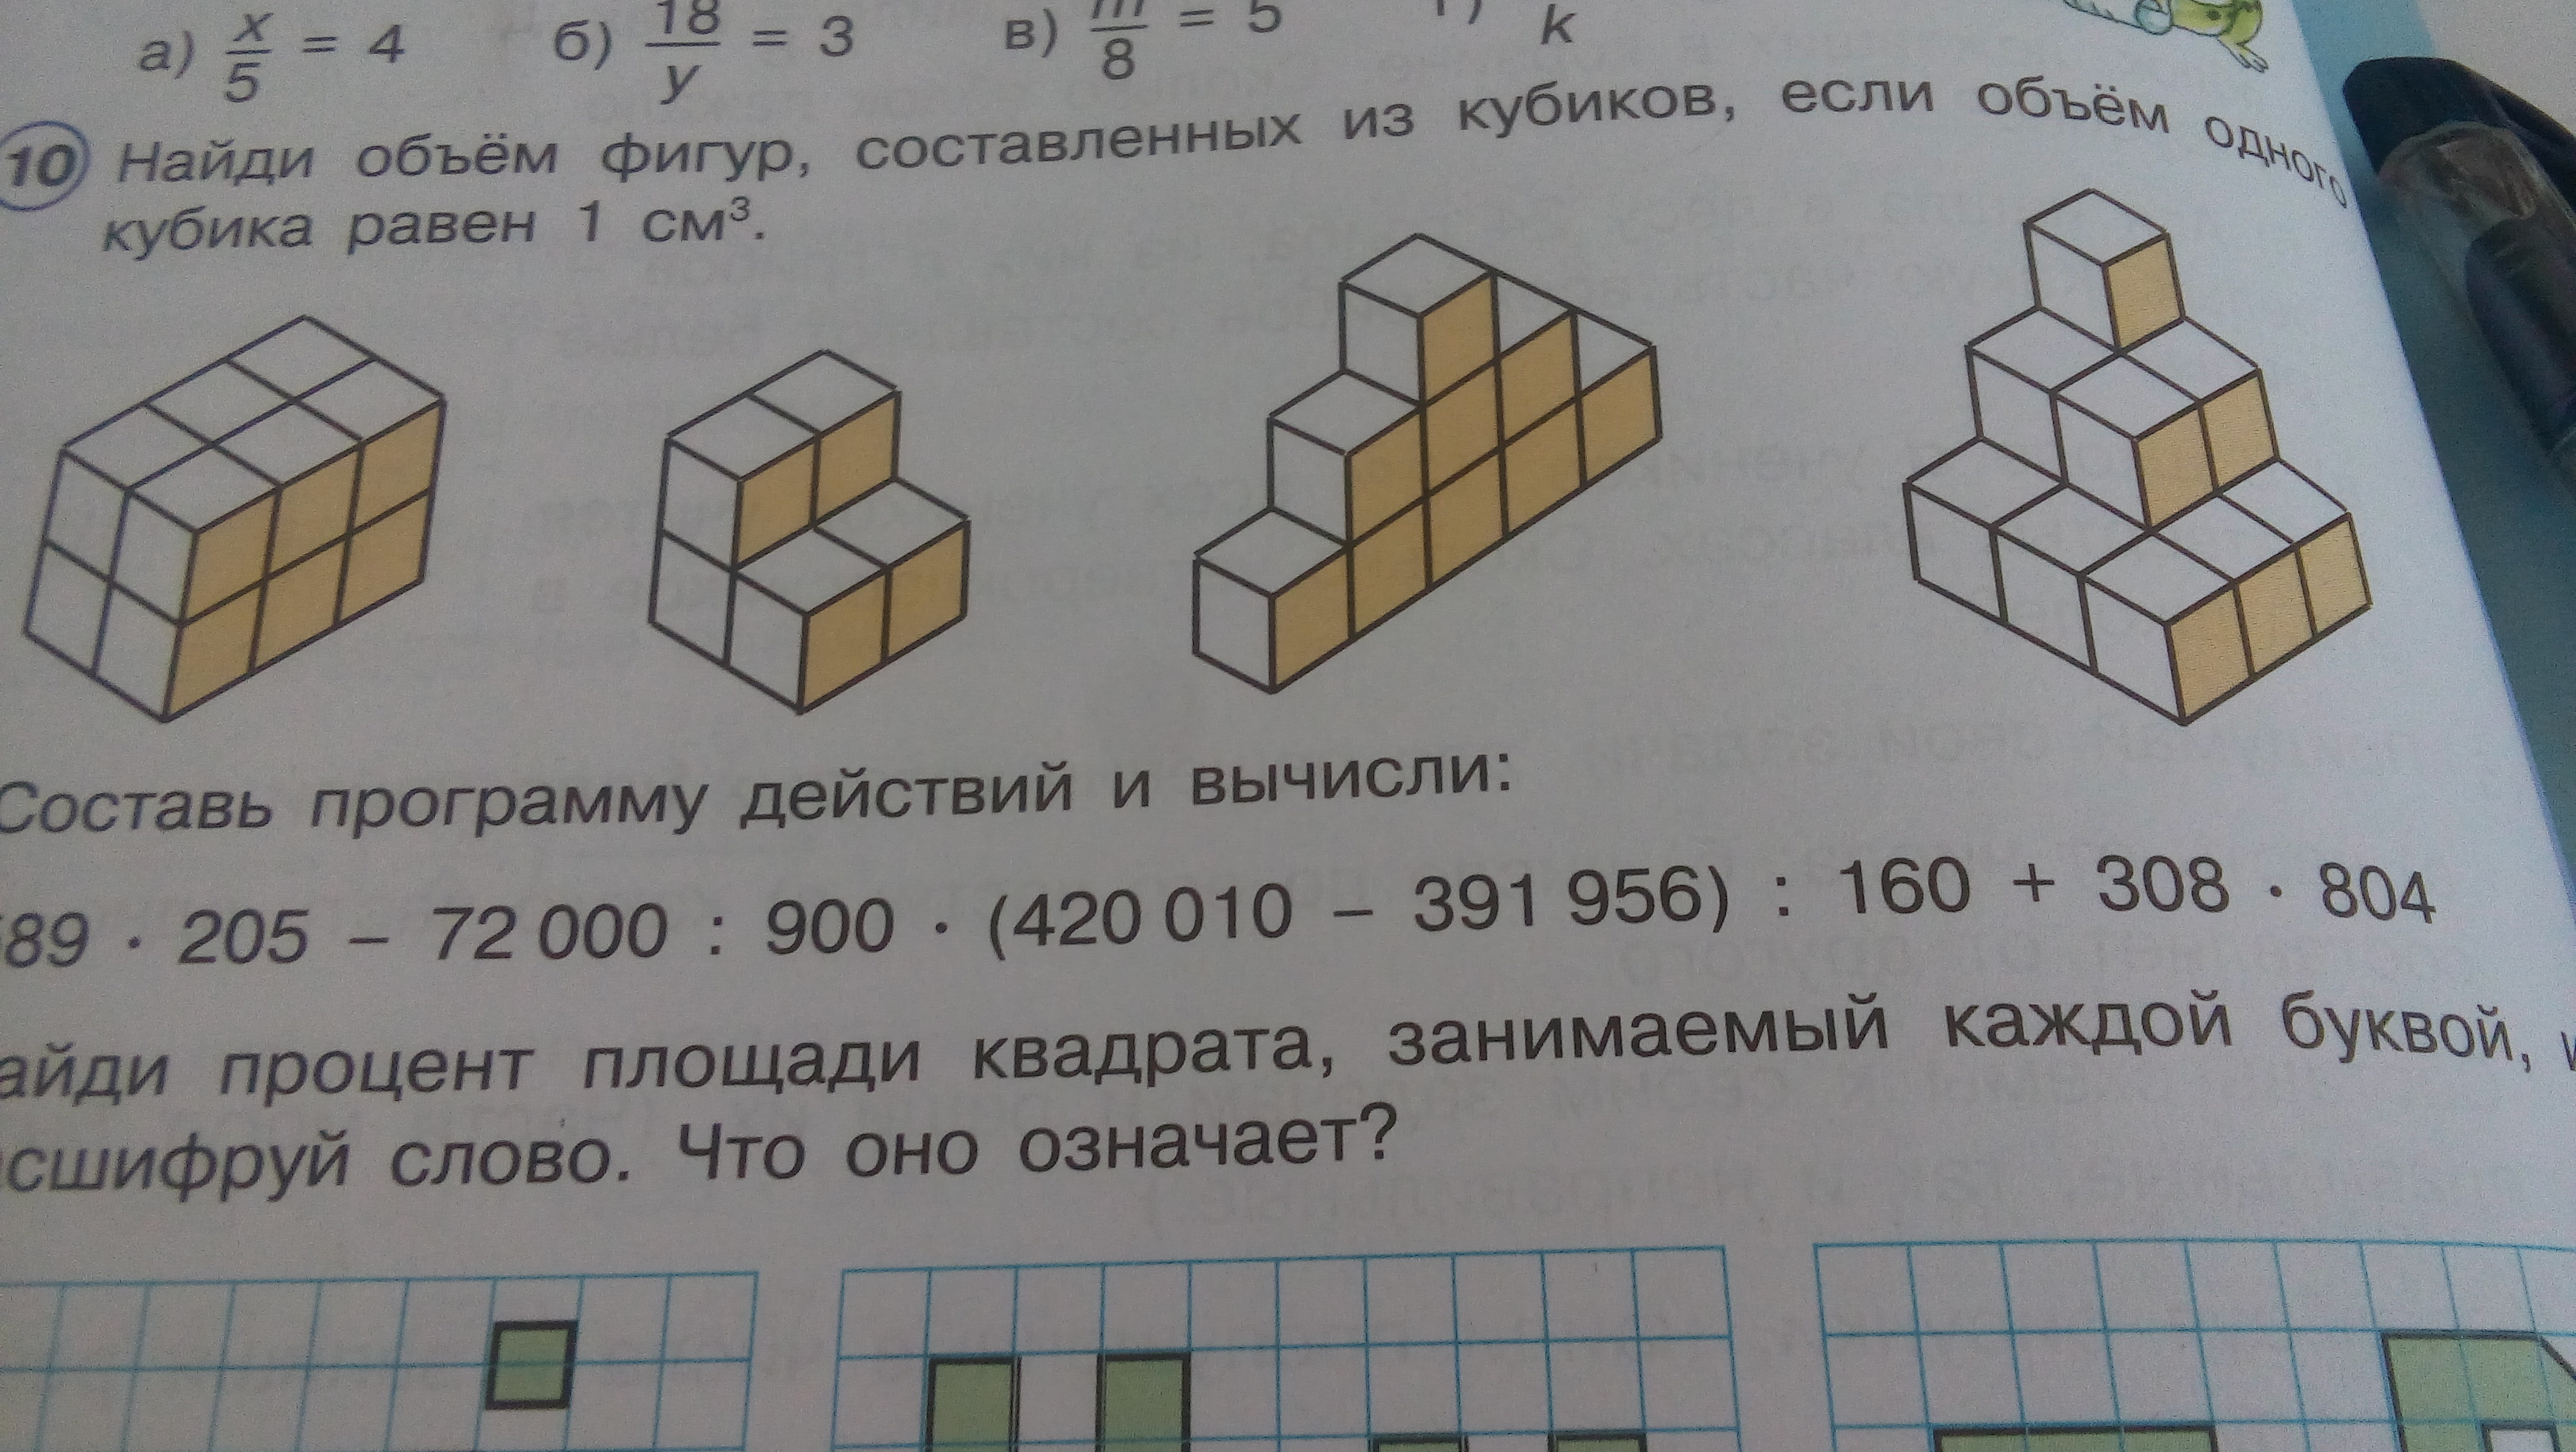 Сколько кубиков осталось в фигуре